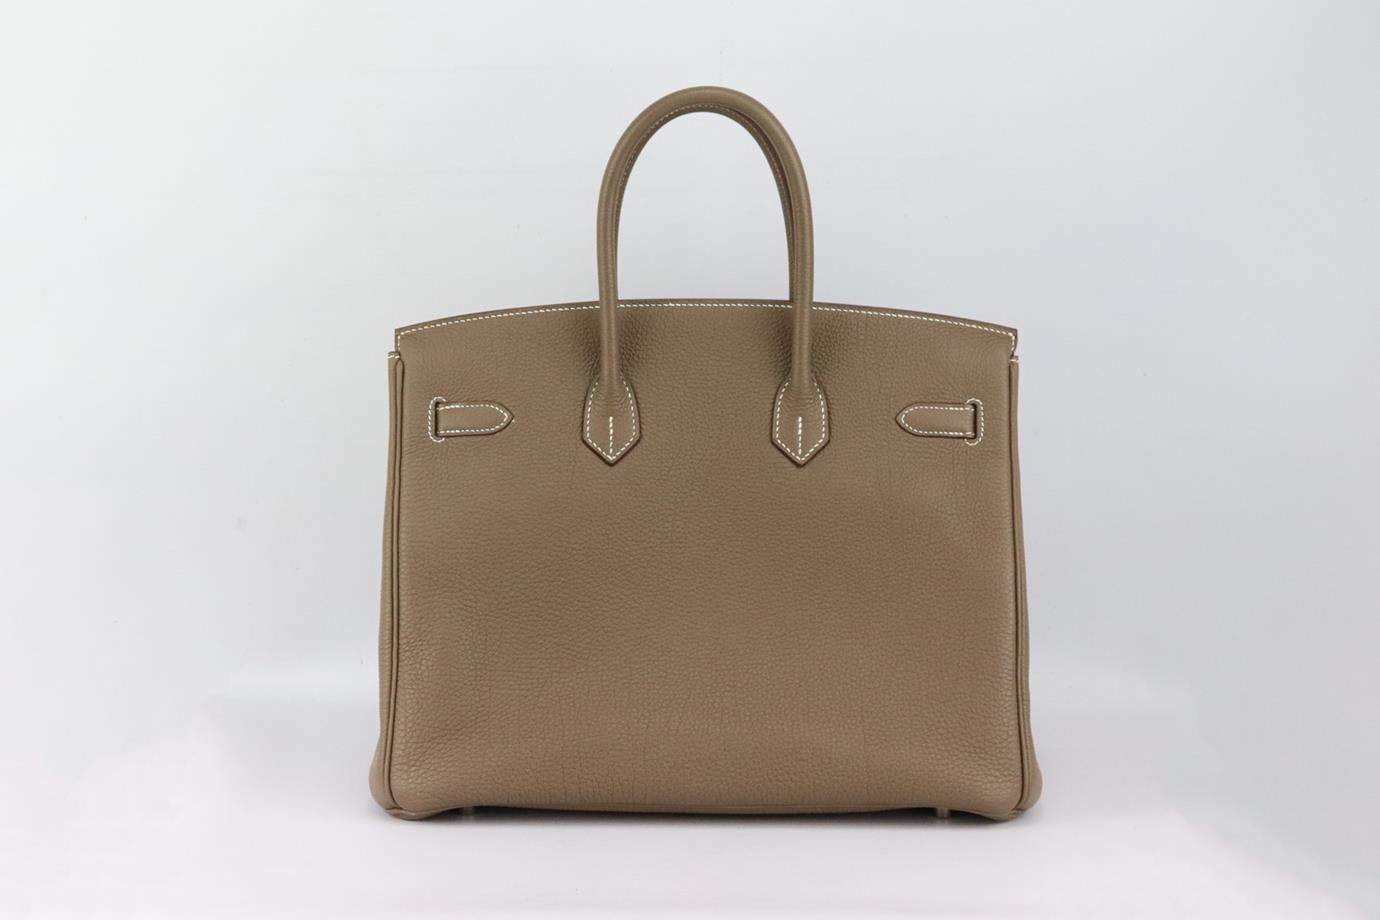 <ul>
<li>Hermès 2011 Birkin 35cm sac en cuir Togo.</li>
<li>Fabriqué en France, ce magnifique sac à main 'Birkin' 2011 de 35 cm a été réalisé en cuir taupe 'Togo' extérieur en 'Etoupe' avec intérieur assorti, cette pièce est décorée avec des